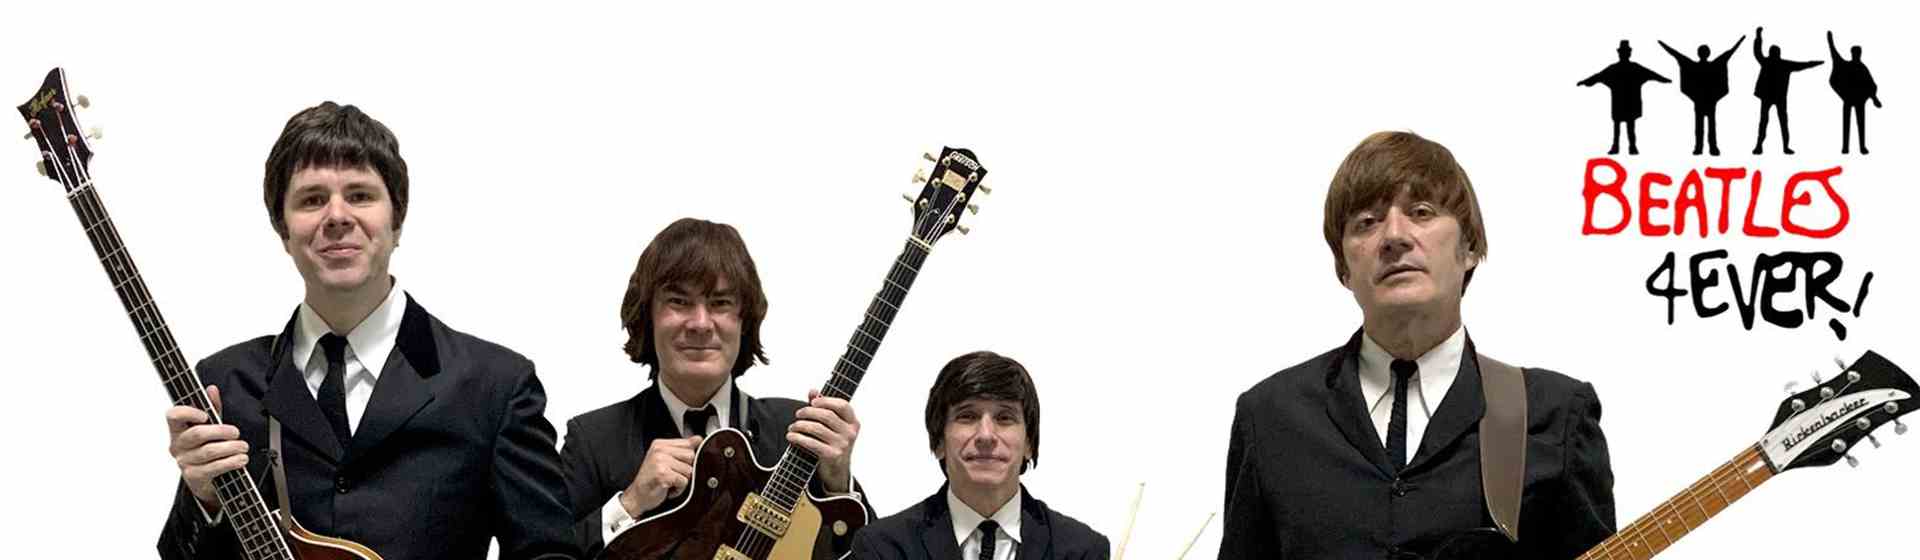 Show: Beatles 4Ever - MTC Cultura